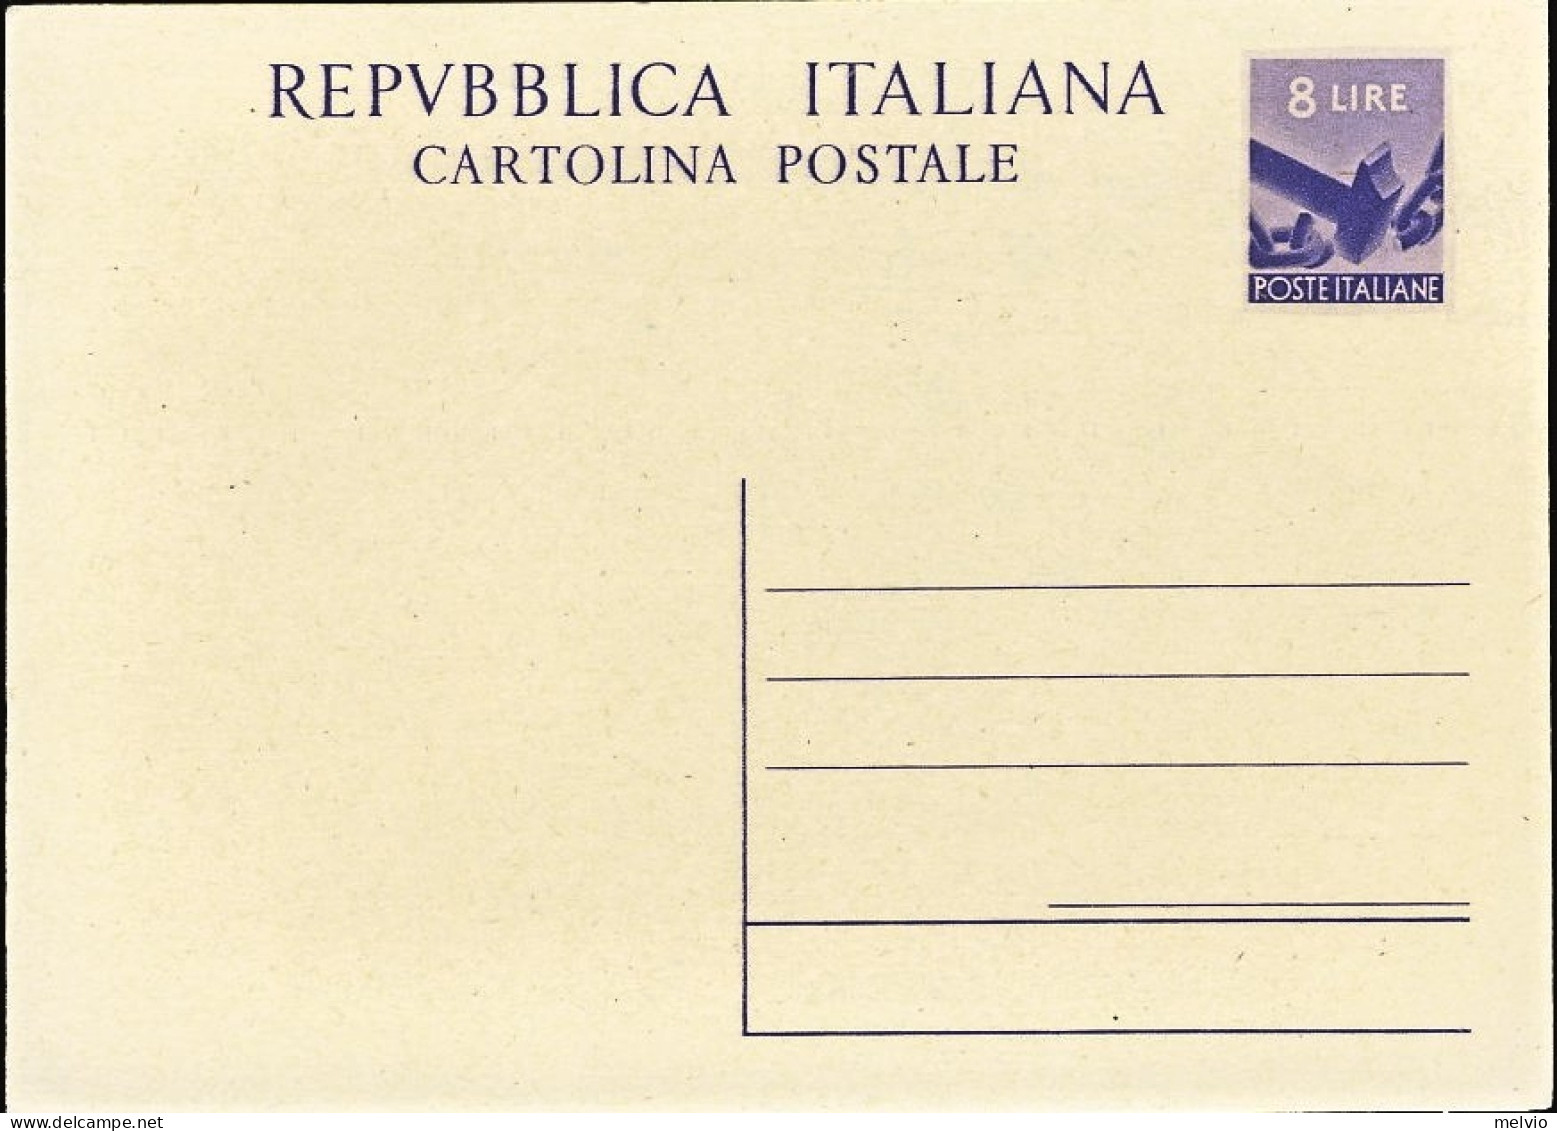 1947/49-cartolina Postale L.8 Martello Democratica "Repubblica Italiana" Cat.Fil - Ganzsachen